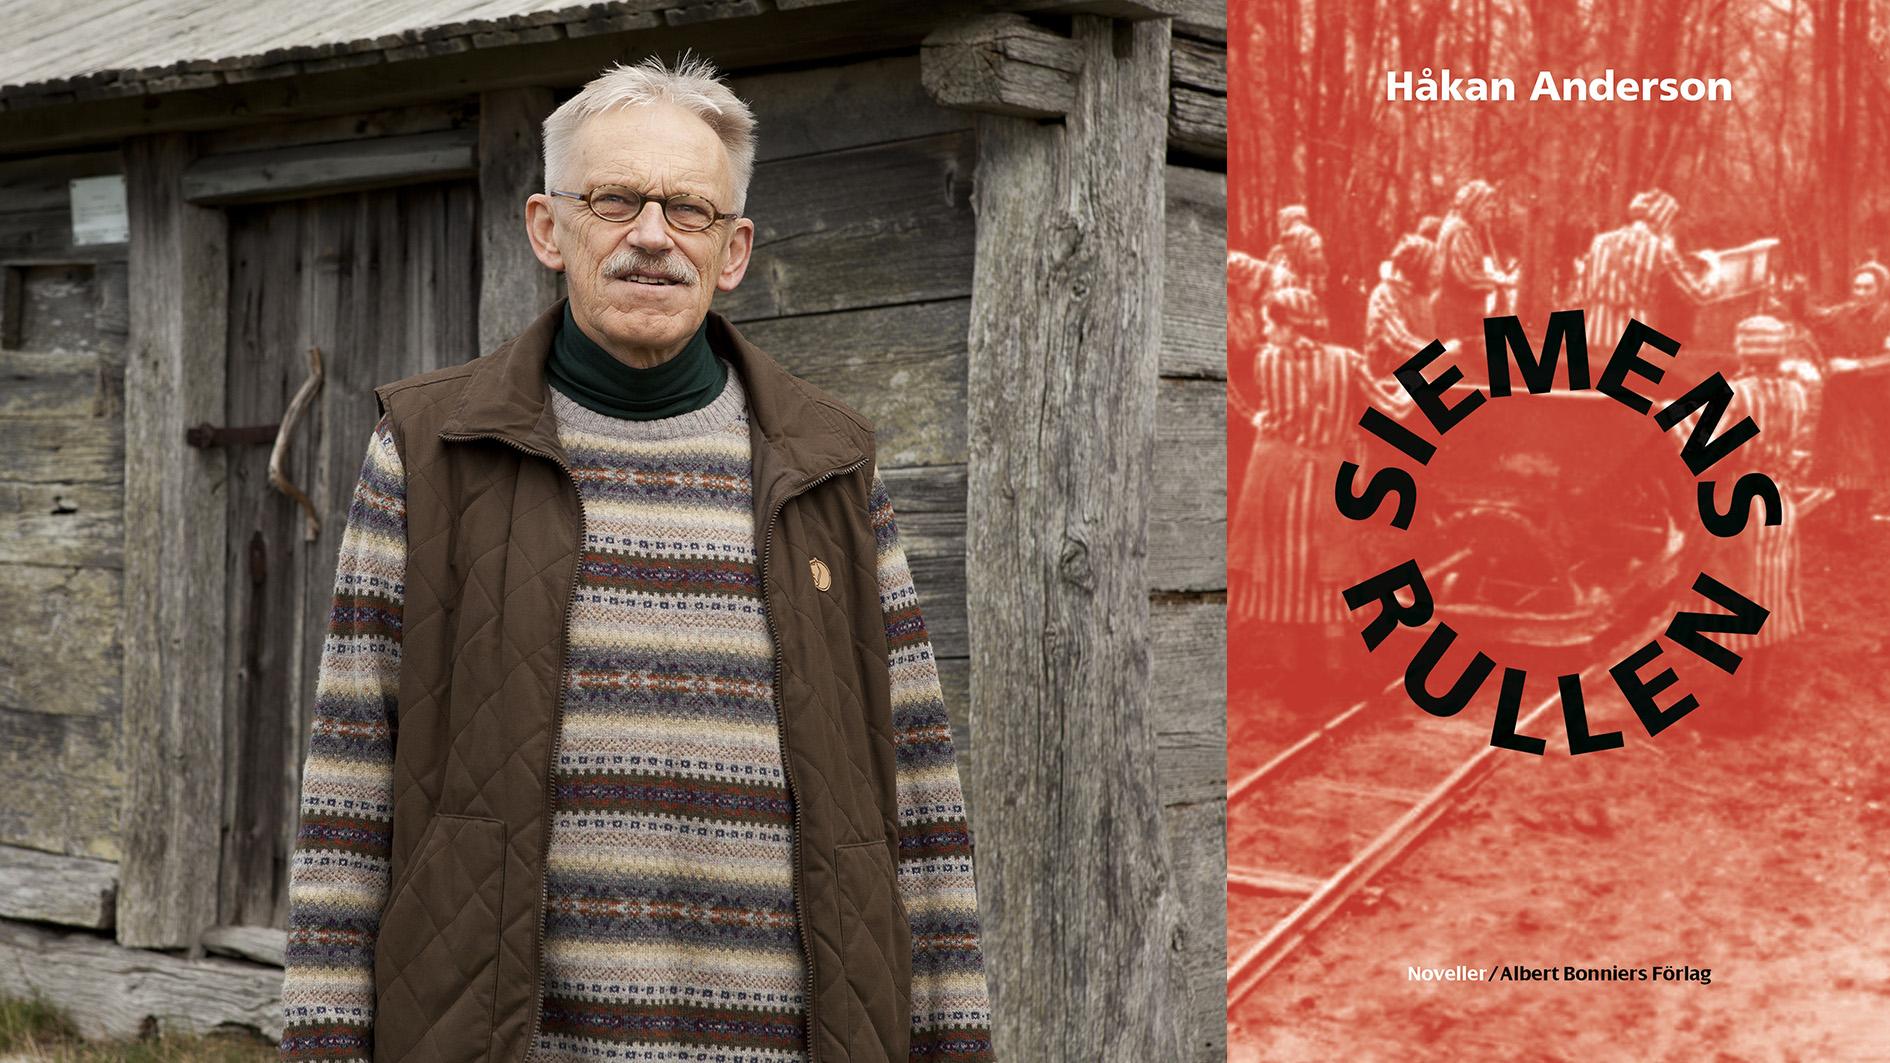 Håkan Anderson (född 1945), debuterade skönlitterärt 2004 med ”Breven” och har utkommit med flera romaner sedan dess. Han är nu aktuell med novellsamlingen ”Siemensrullen”. 